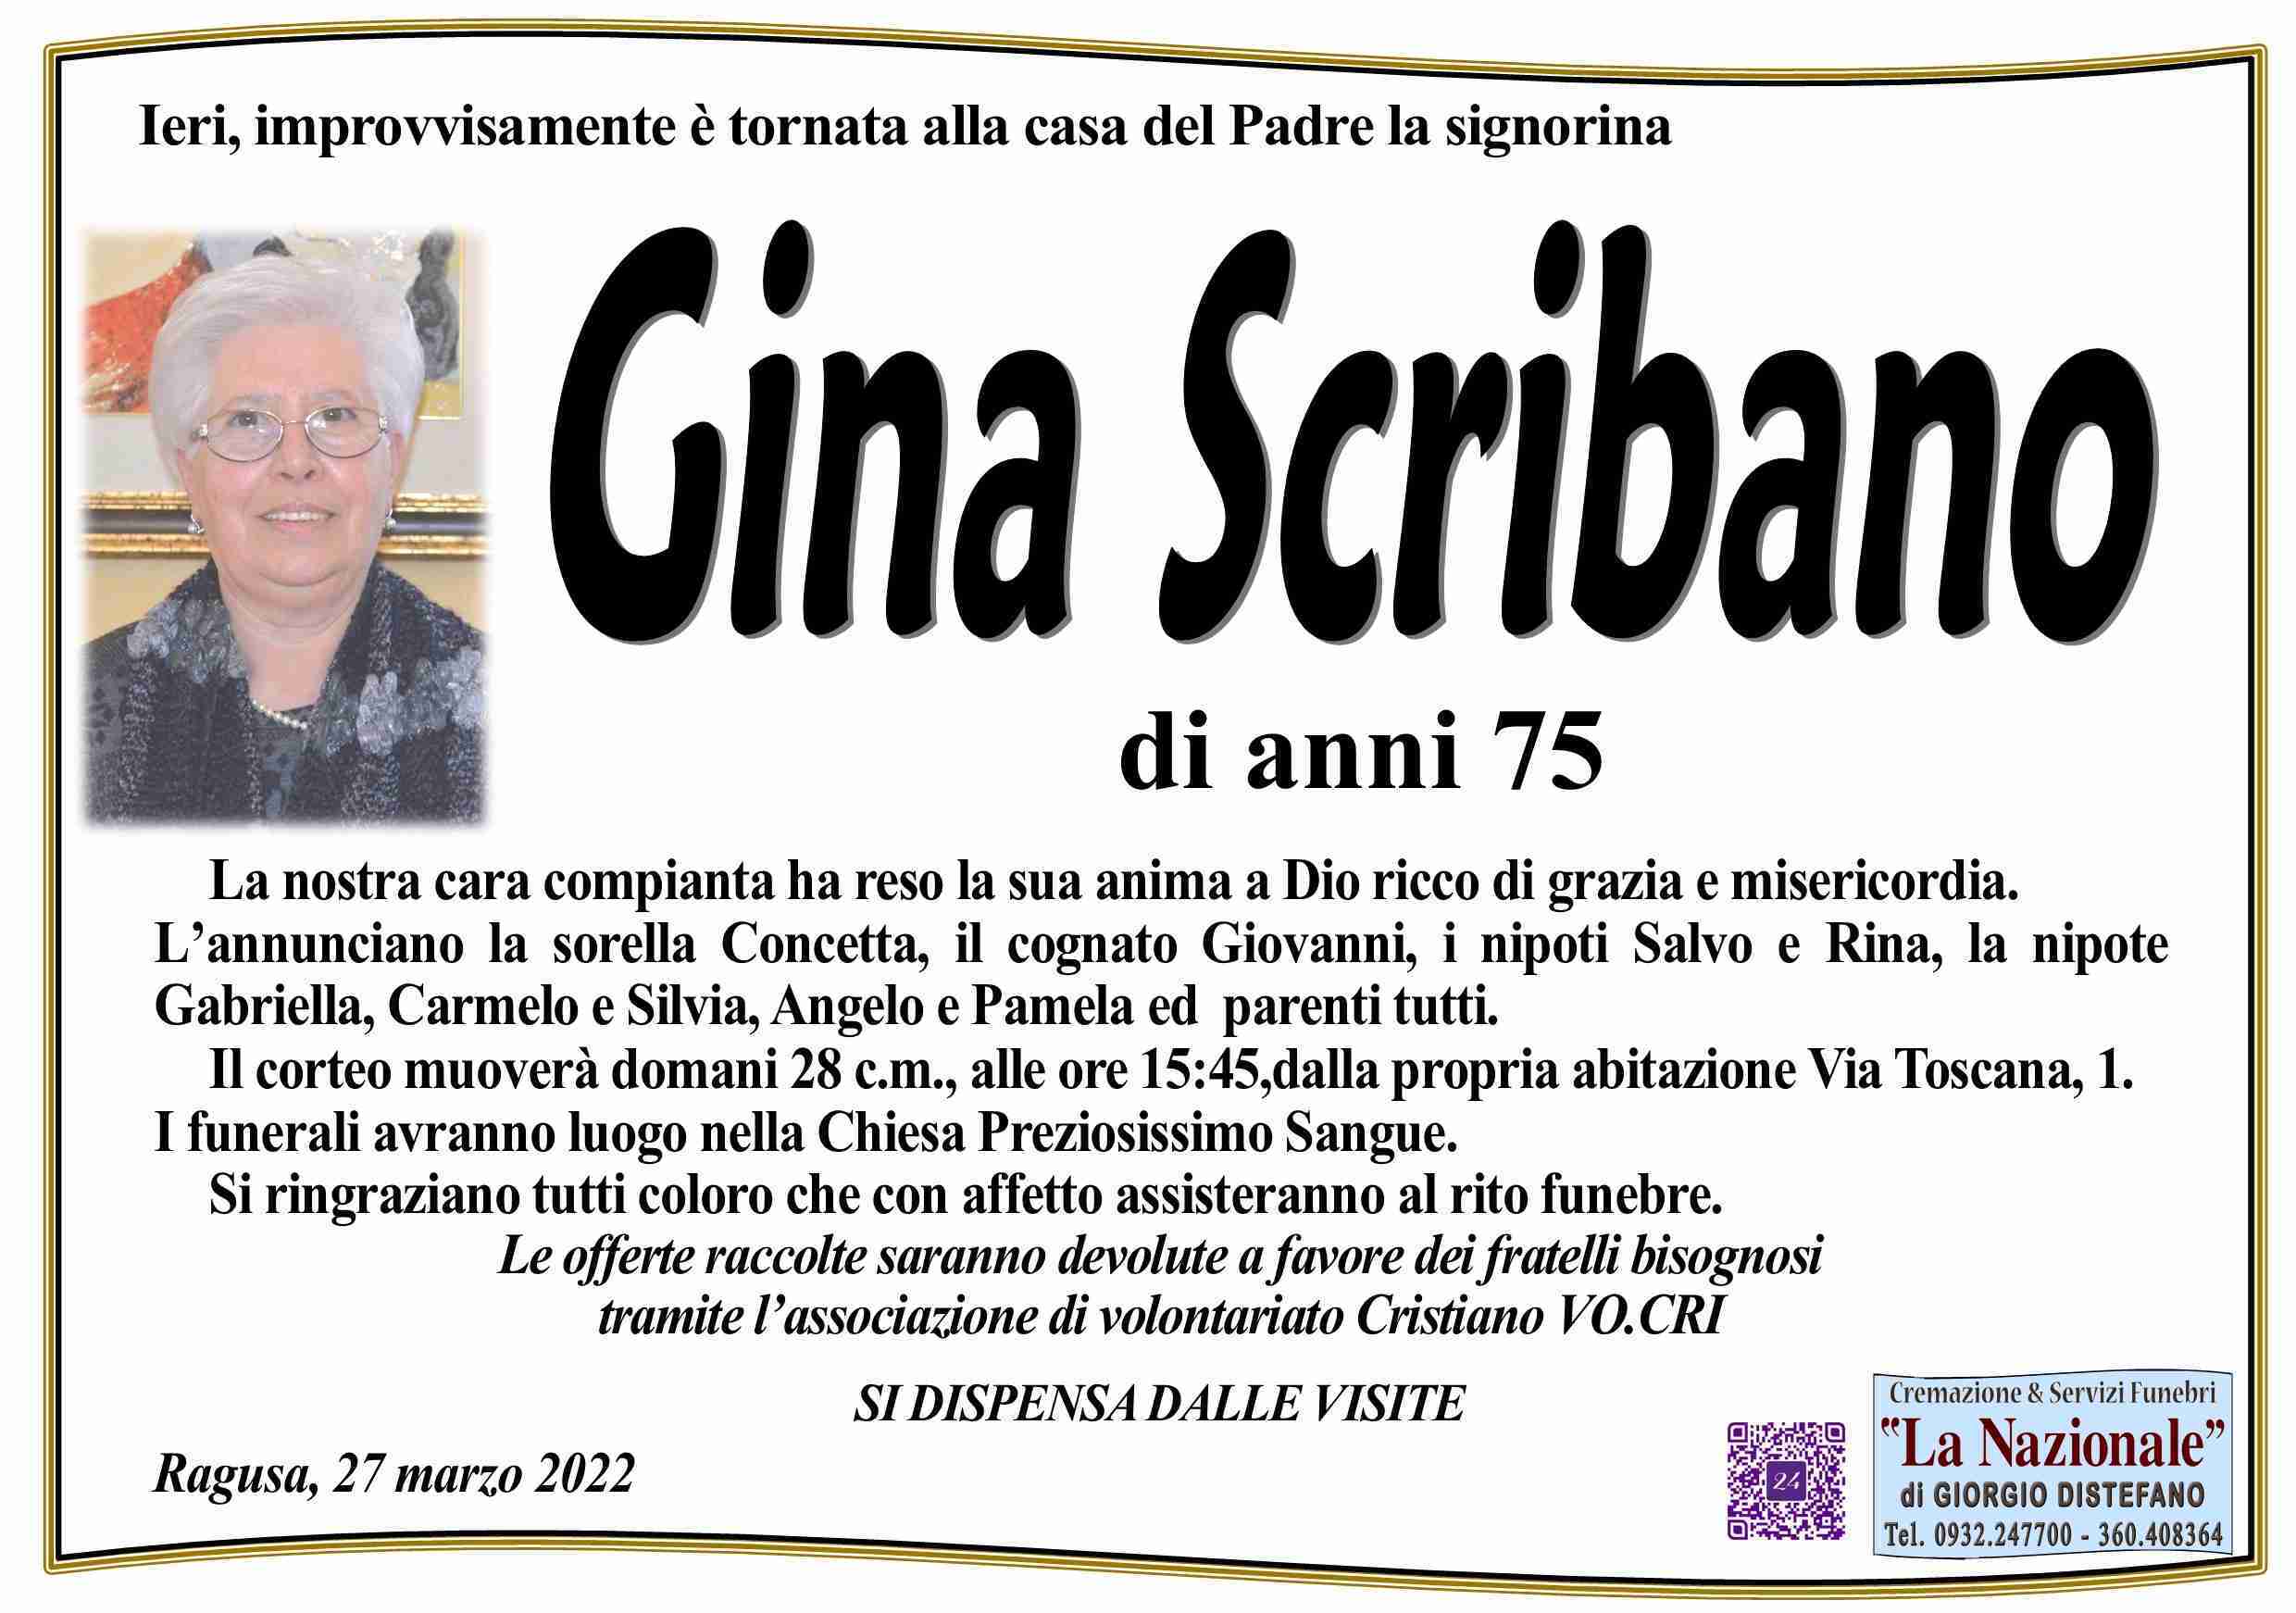 Gina Scribano